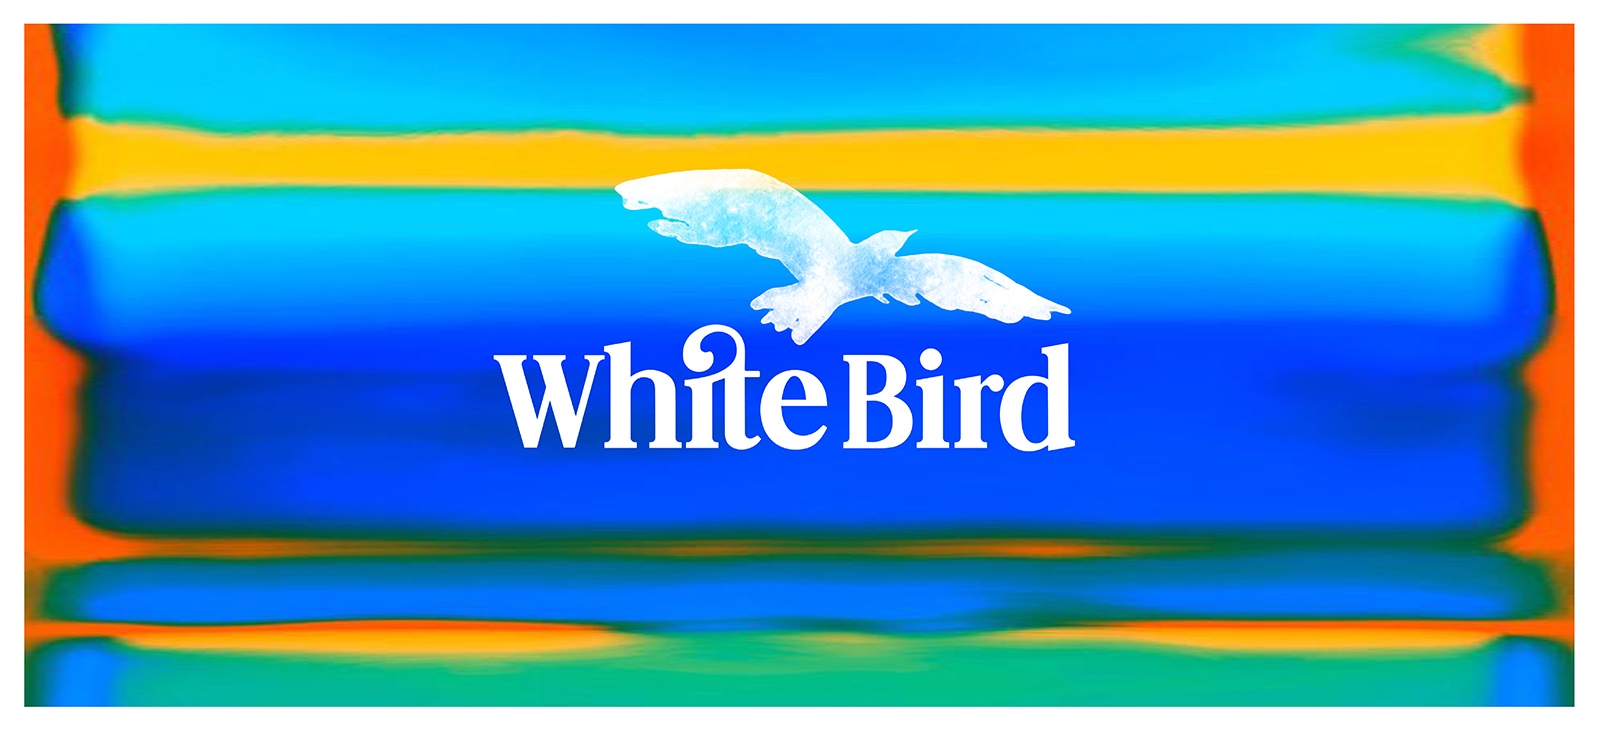 WHITE BIRD